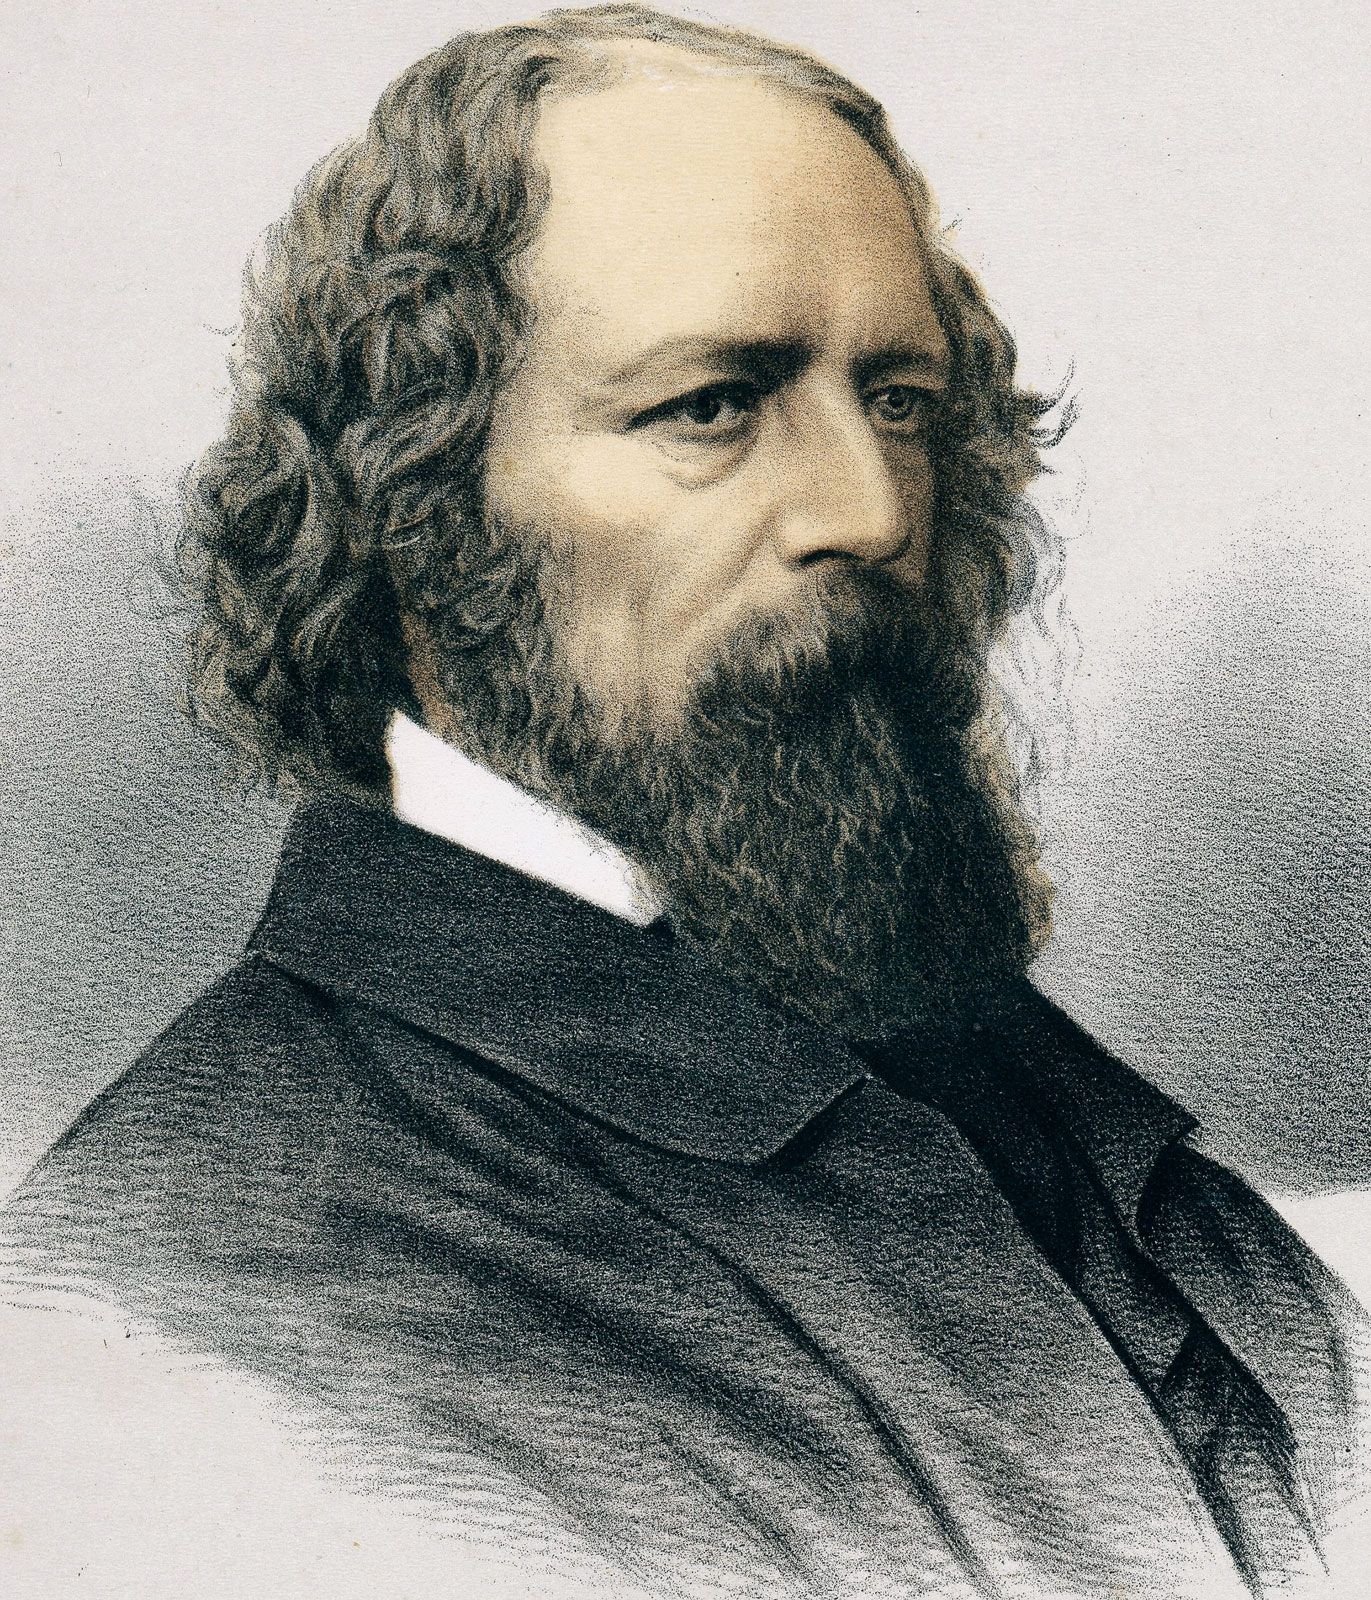  Alfred Tennyson, biografia: historia, bizitza eta lanak